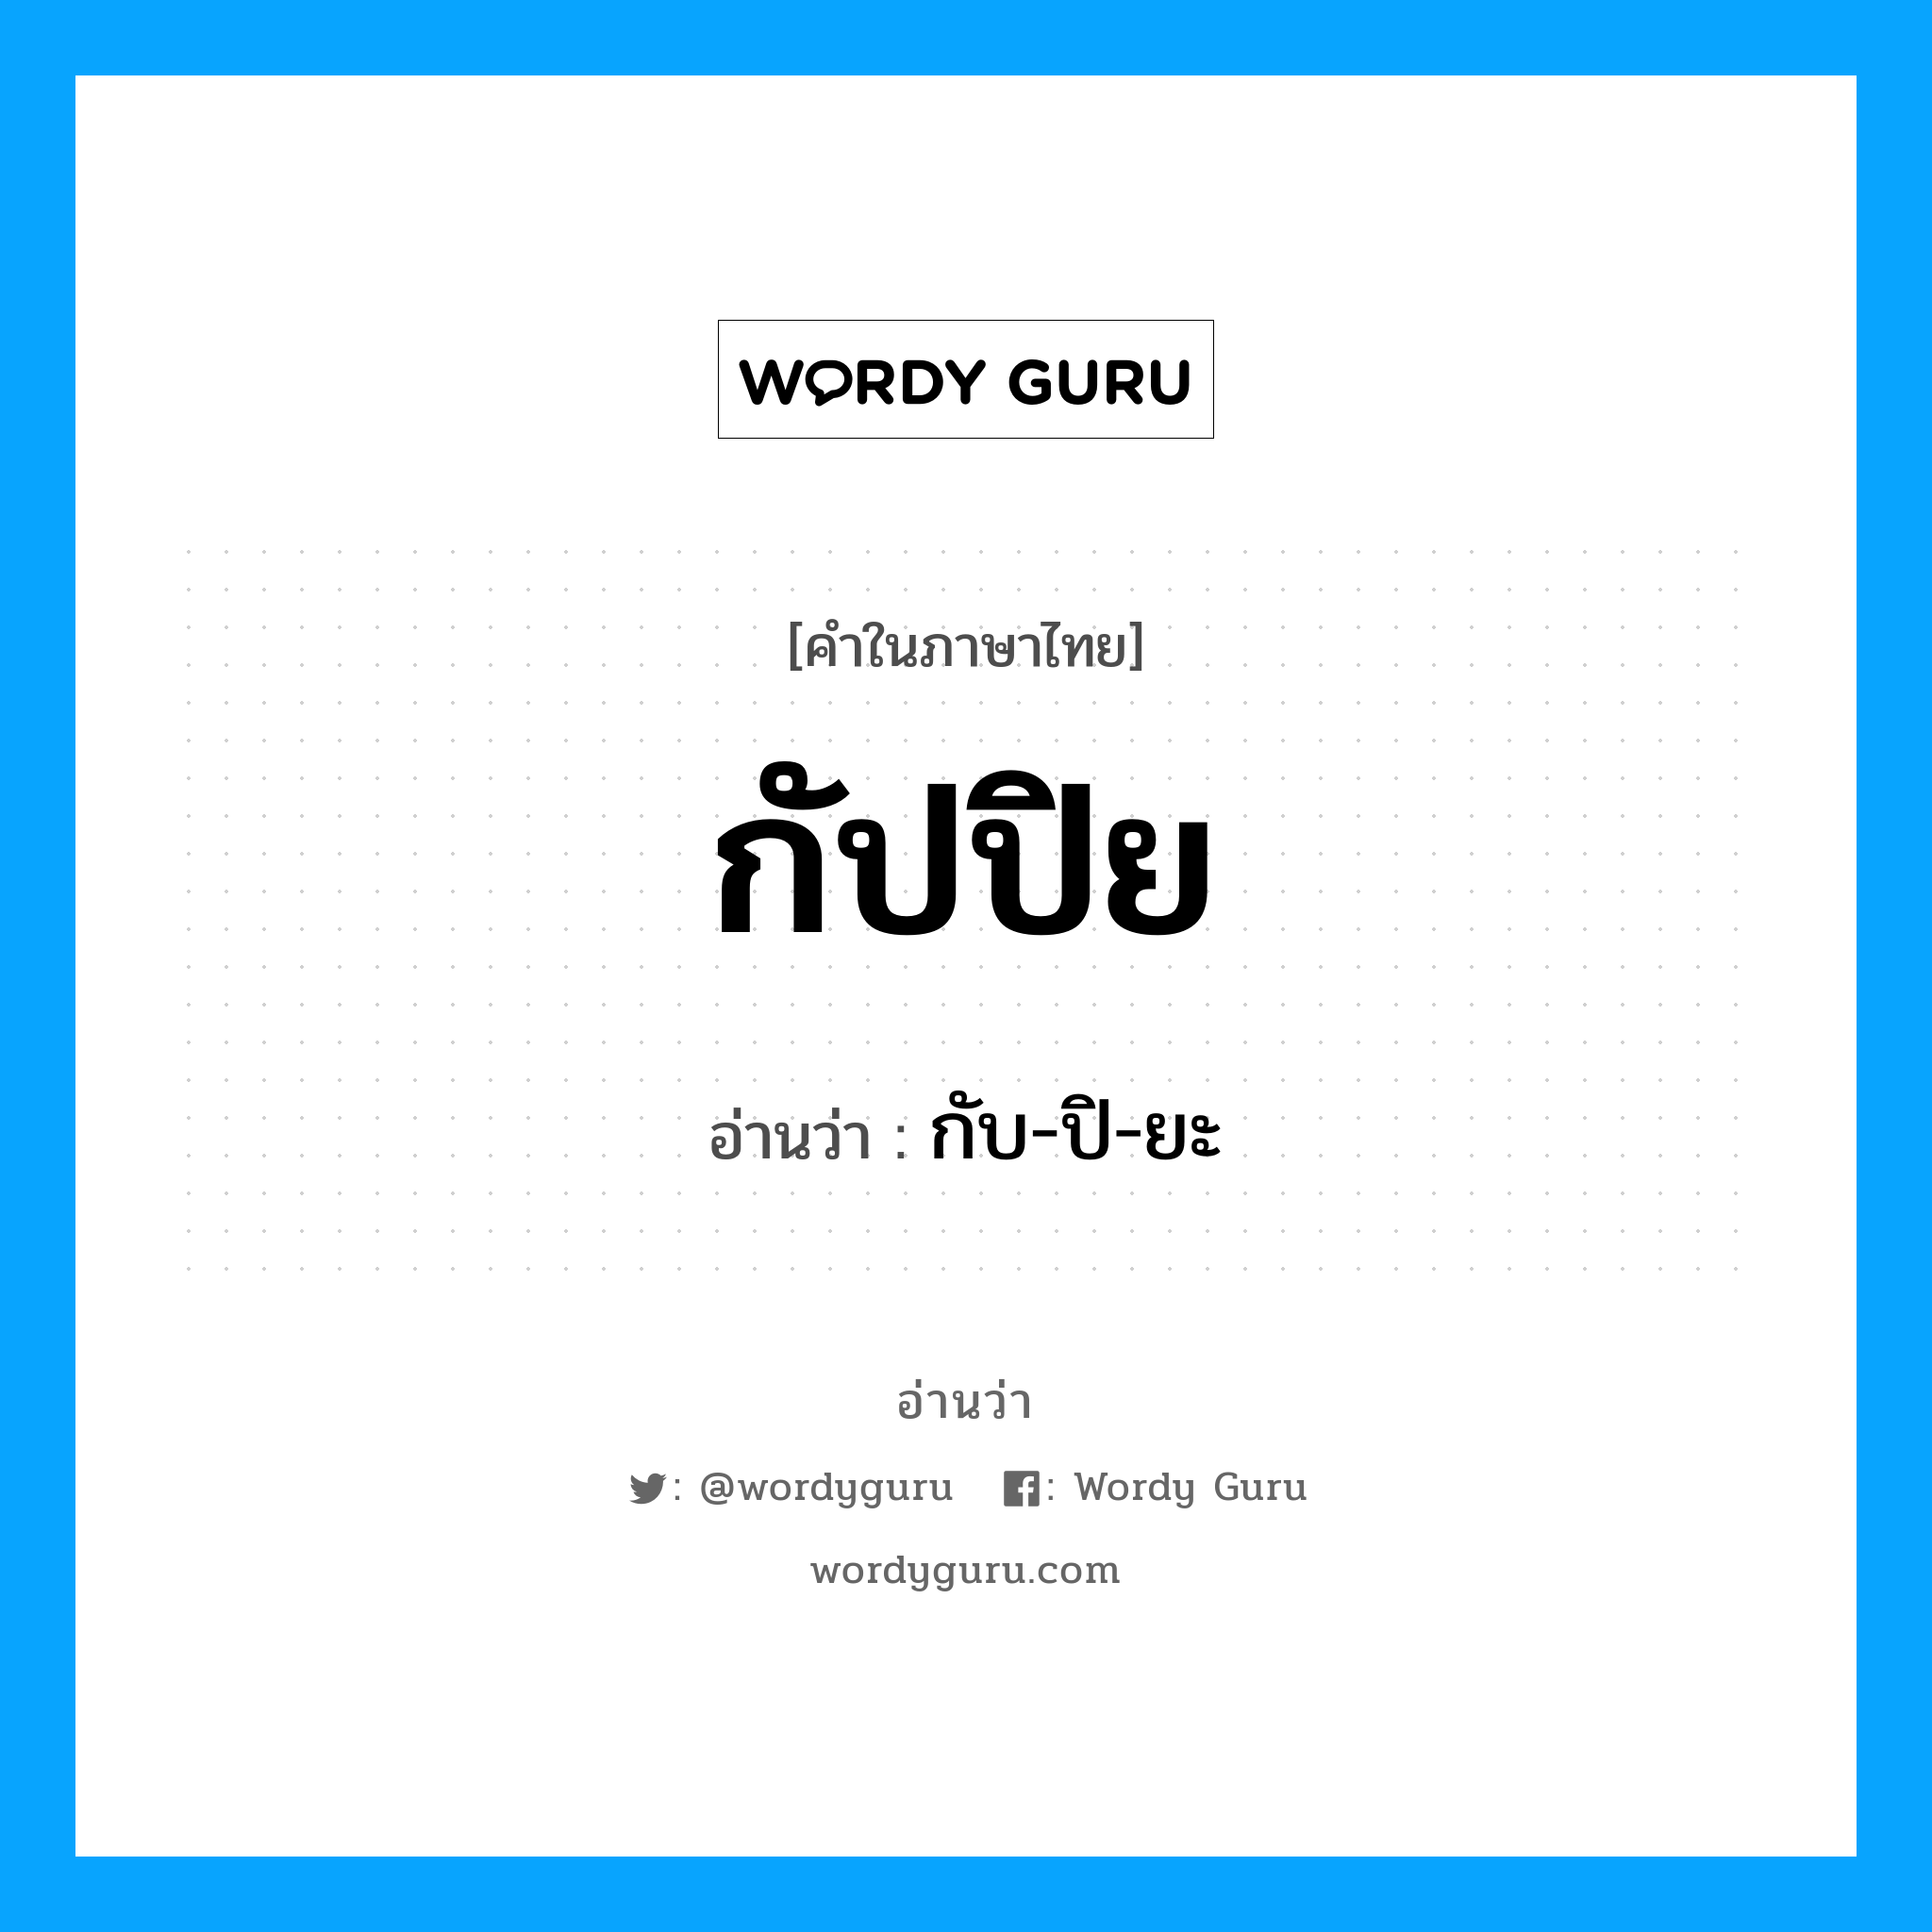 กับ-ปิ-ยะ เป็นคำอ่านของคำไหน?, คำในภาษาไทย กับ-ปิ-ยะ อ่านว่า กัปปิย